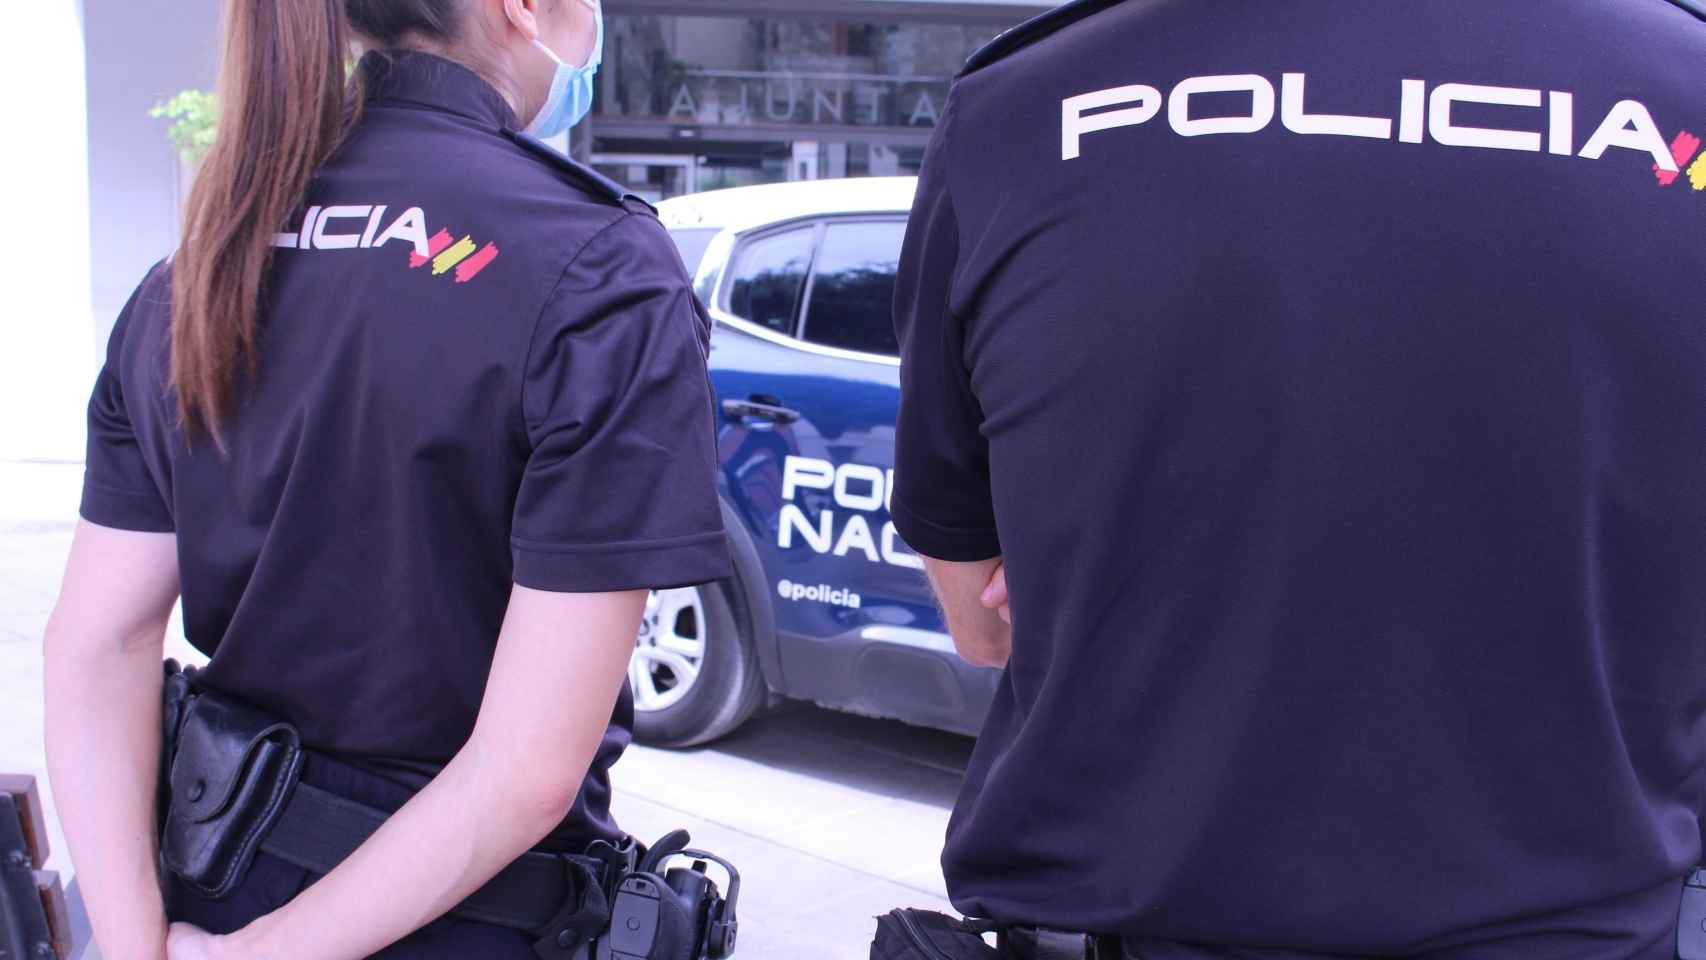 Cinco policías fuera de servicio salvan a un hombre tras sufrir un atragantamiento en Barcelona. Agentes de la Policía Nacional en una imagen de archivo / CNP